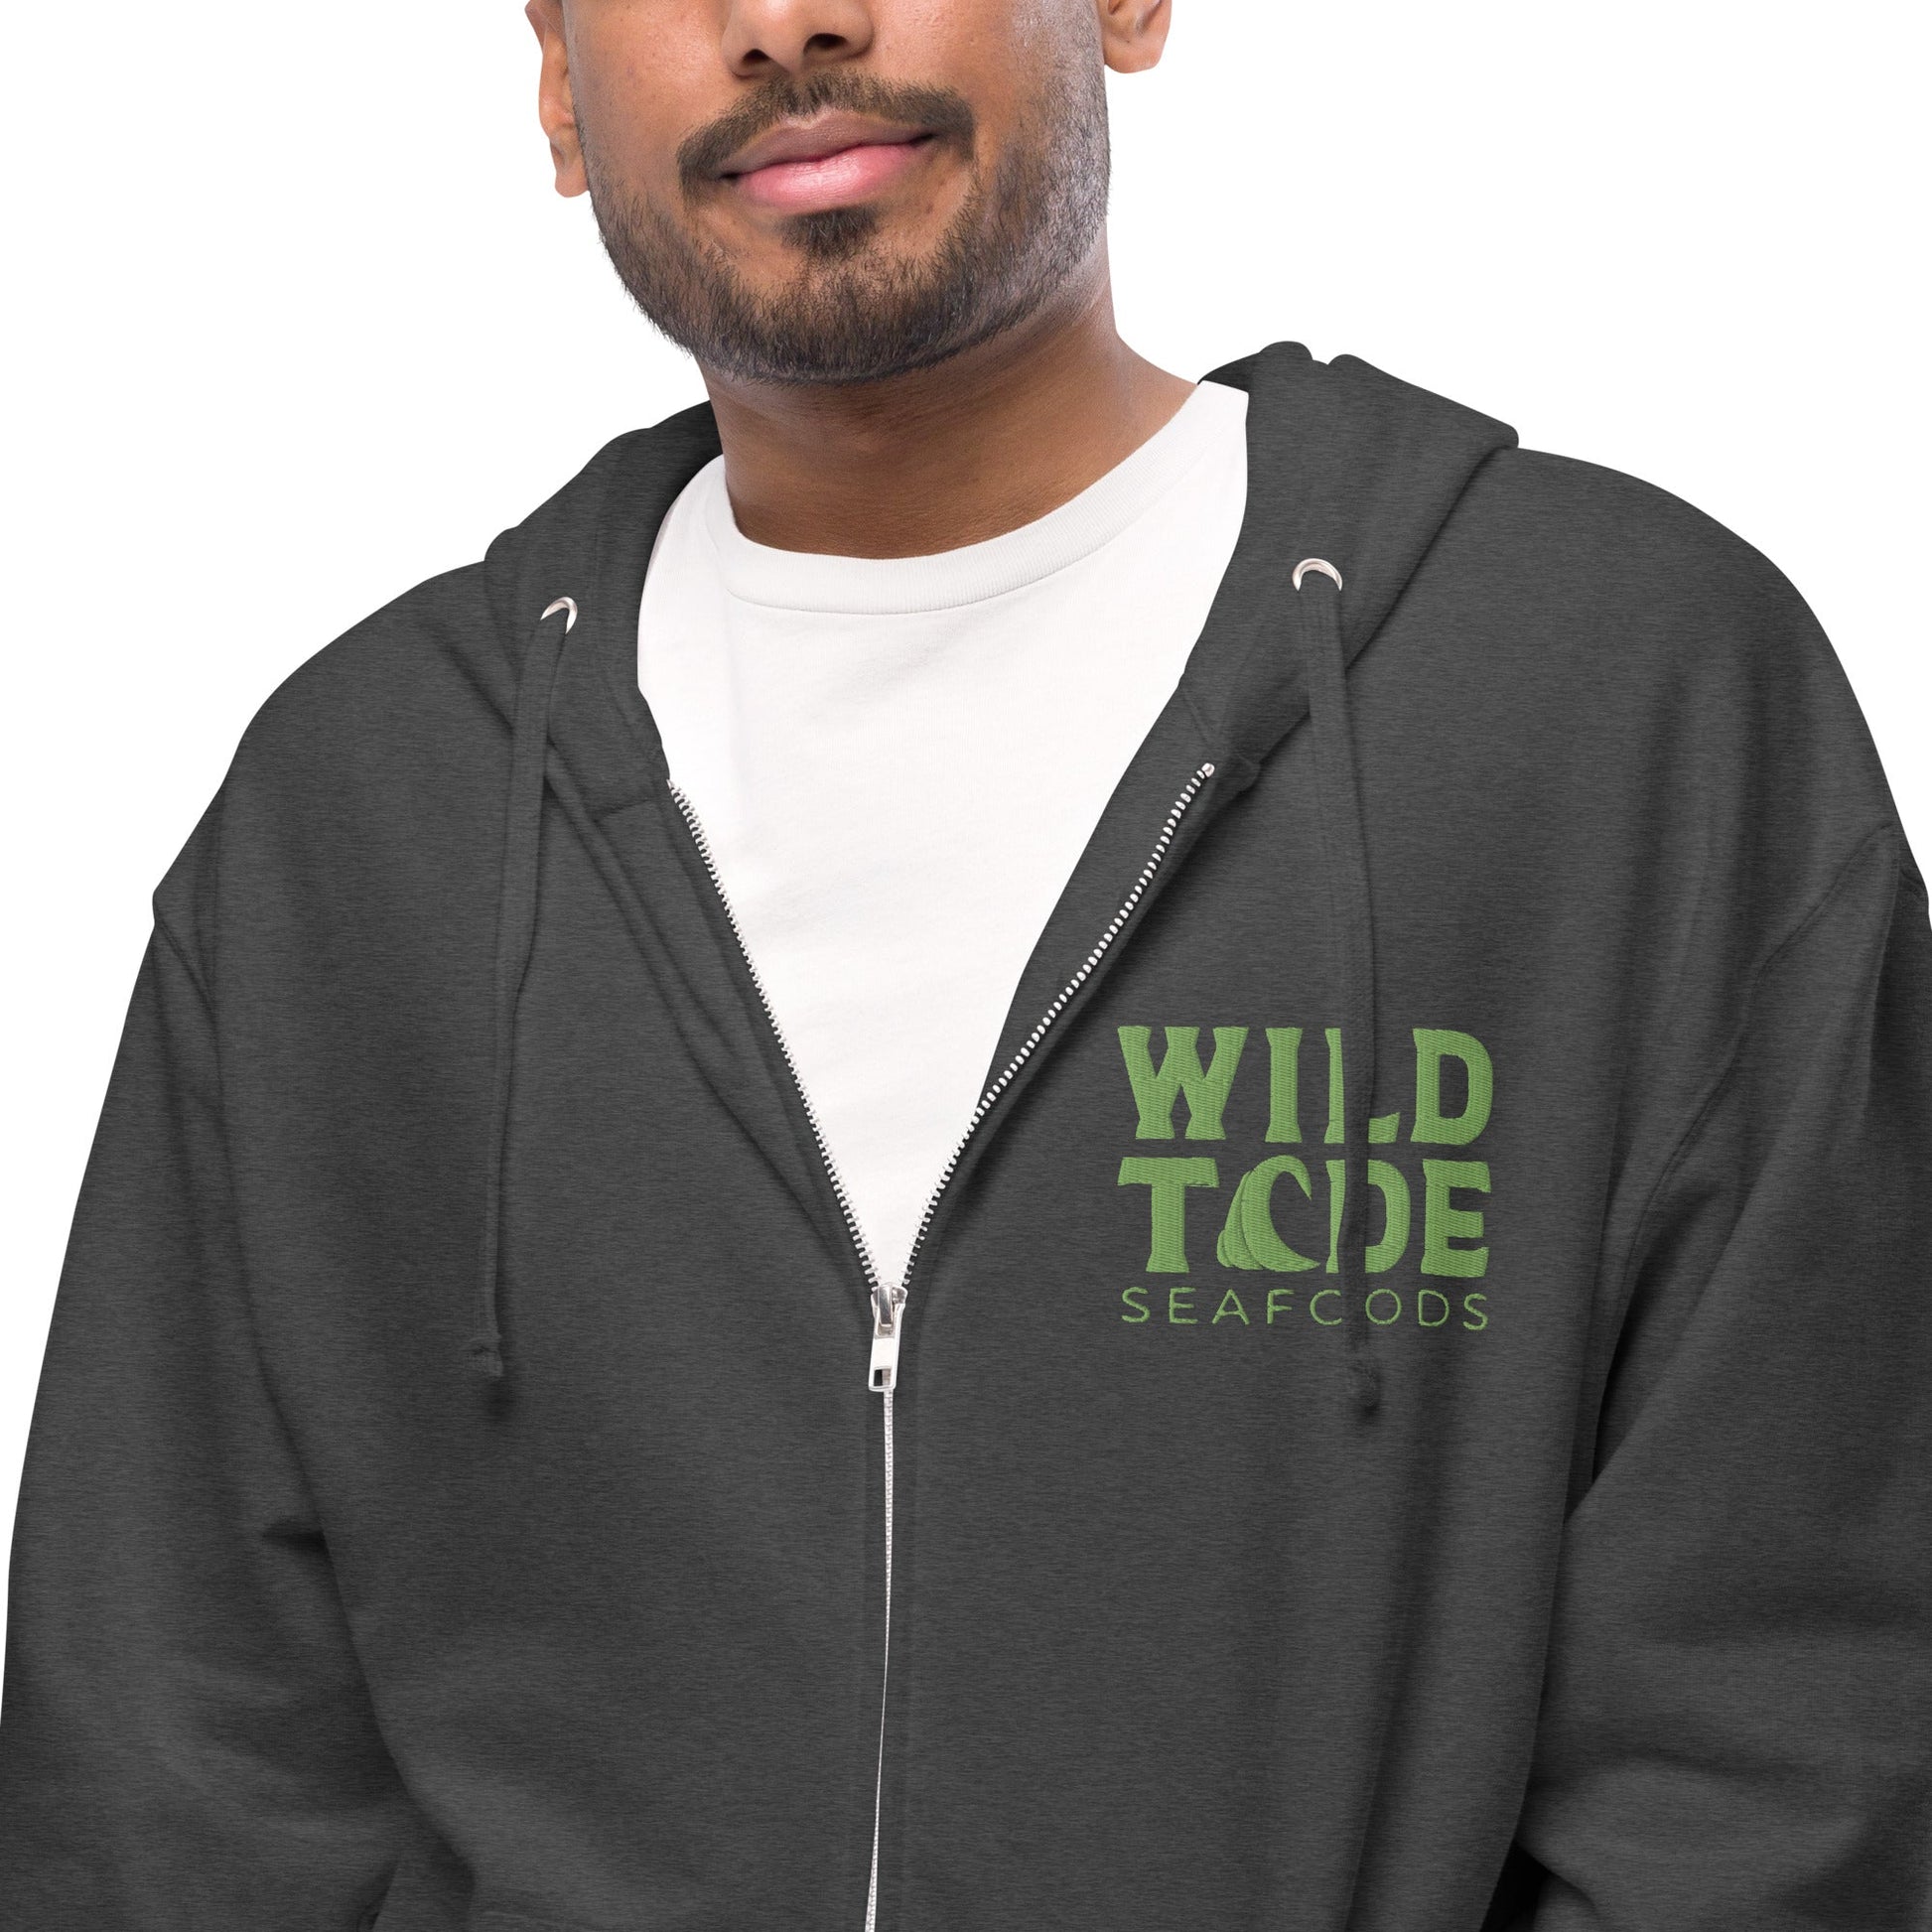 Wild Tide Seafoods Unisex fleece zip up hoodie - Wild Tide Seafoods